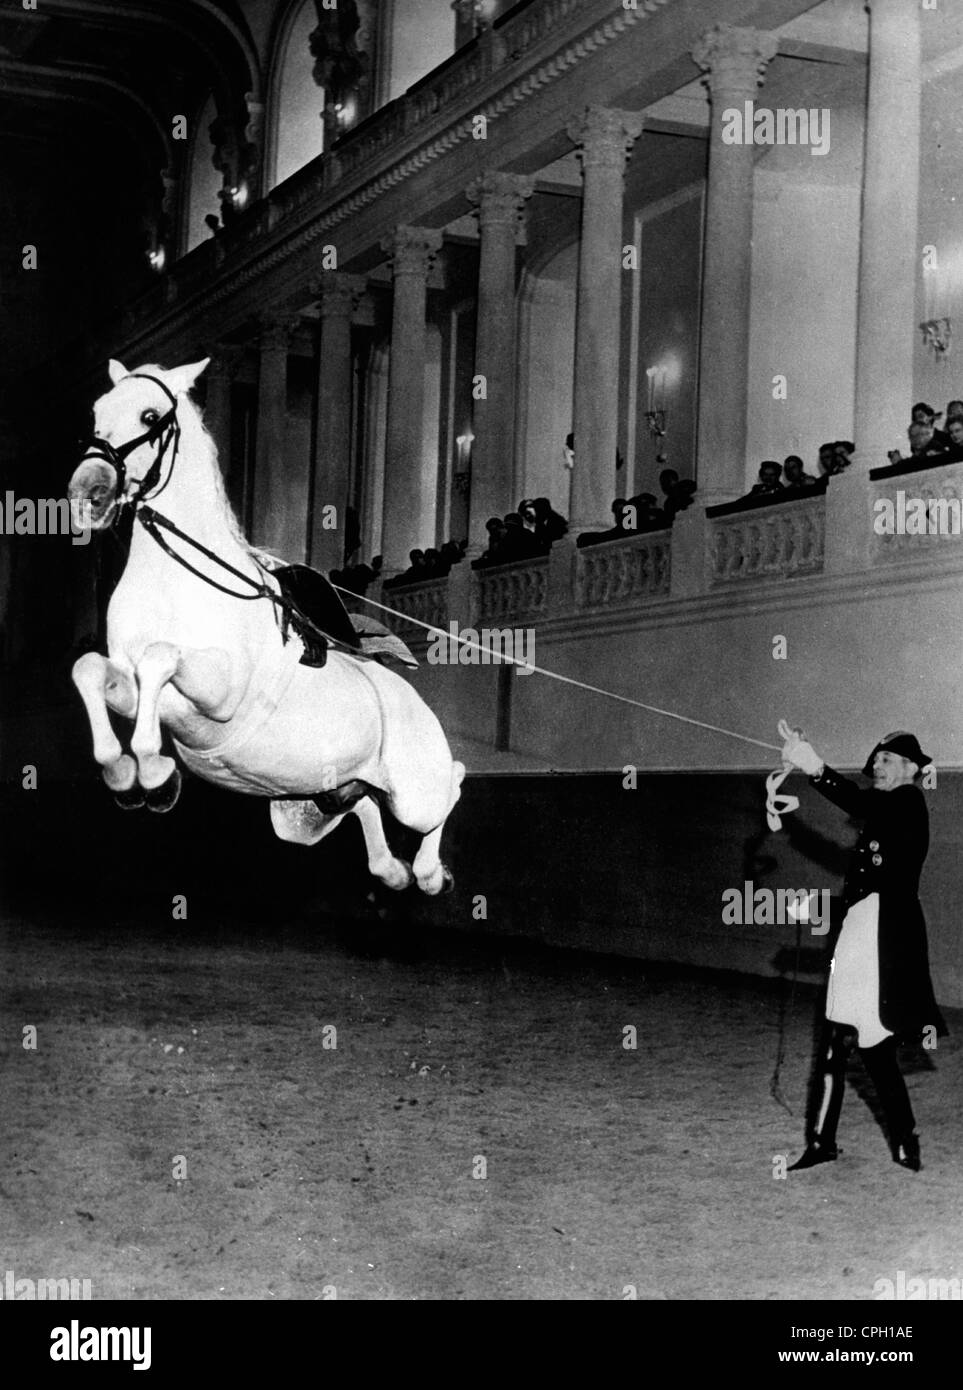 Géographie / Voyage, Autriche, Vienne, bâtiments, Ecole d'équitation espagnole, Jumping Lippizaner, 1955, droits supplémentaires-Clearences-non disponible Banque D'Images